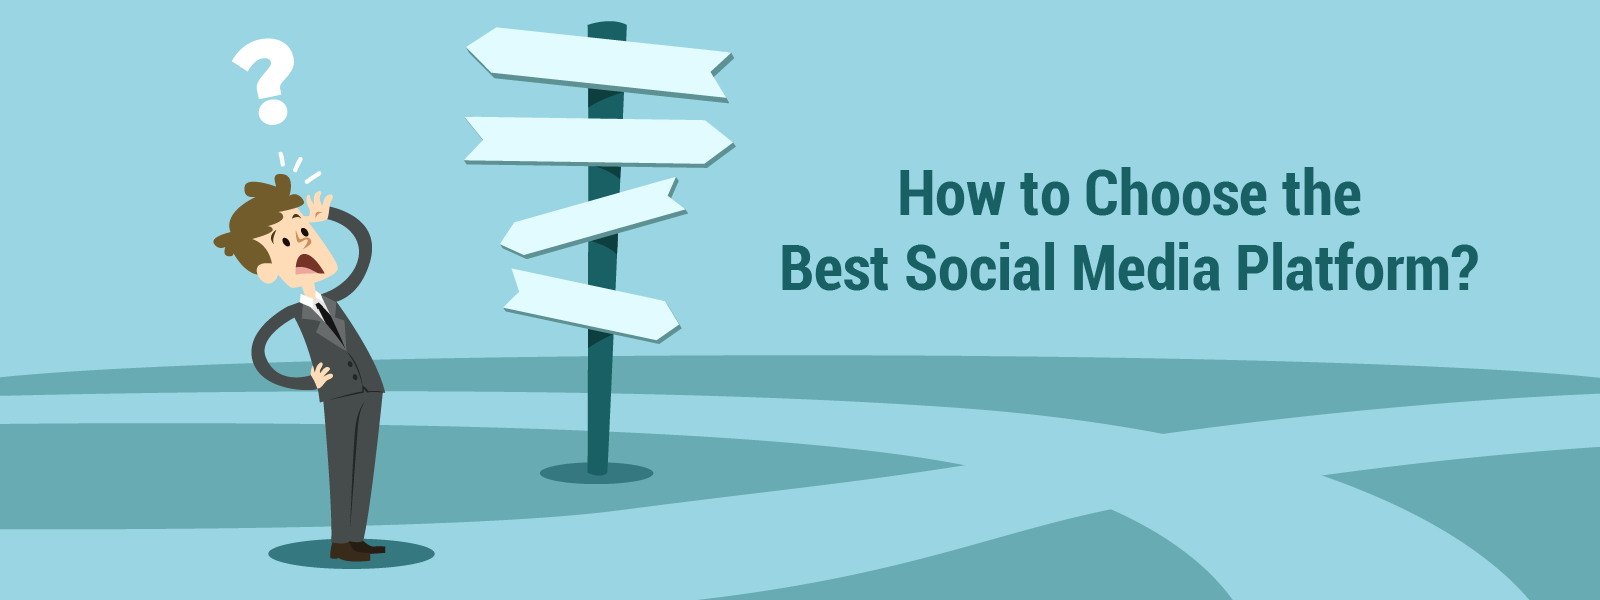 How to Choose the Best Social Media Platform